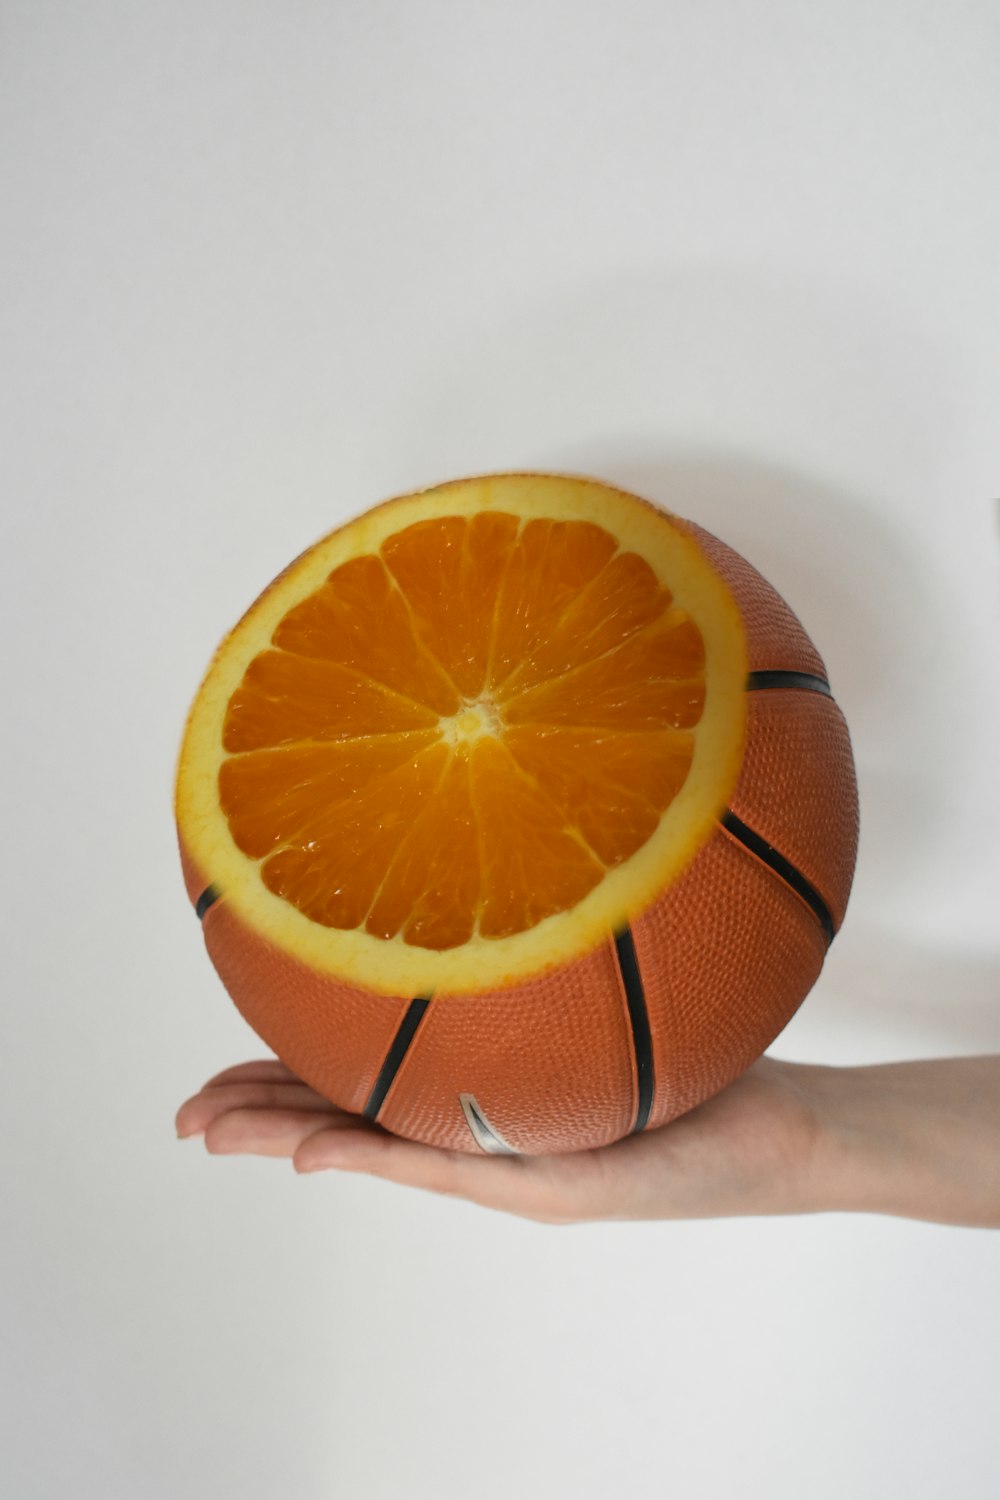 personne tenant un fruit orange sur une surface blanche